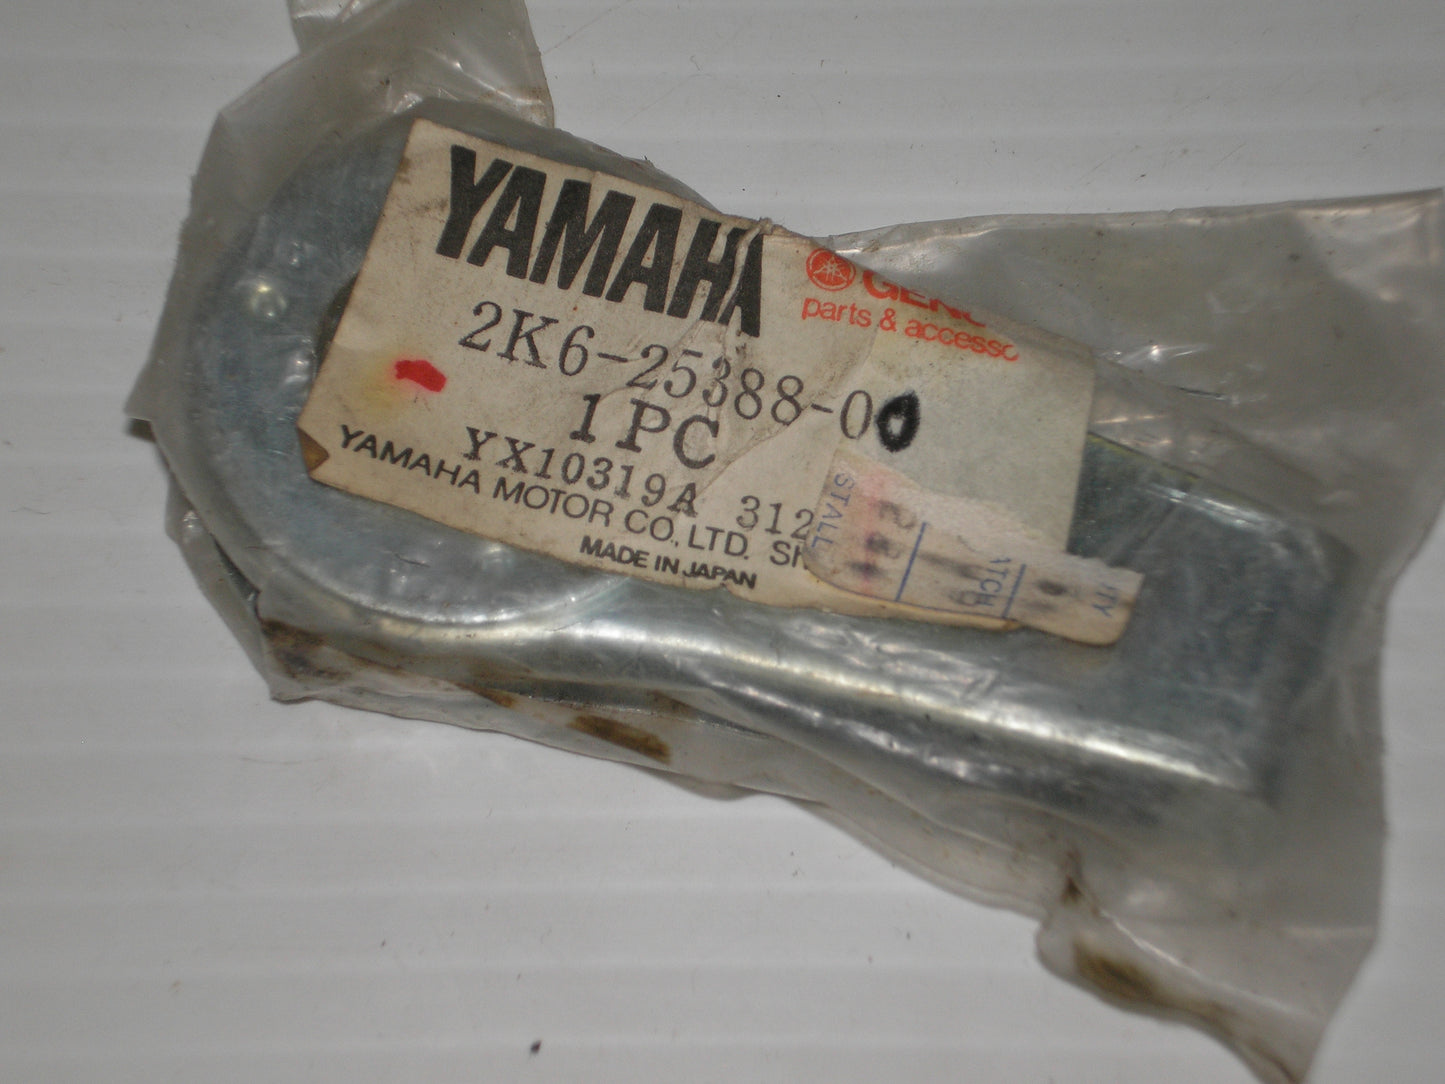 YAMAHA YZ125 Rear Wheel Chain Adjuster Puller 2K6-25388-00